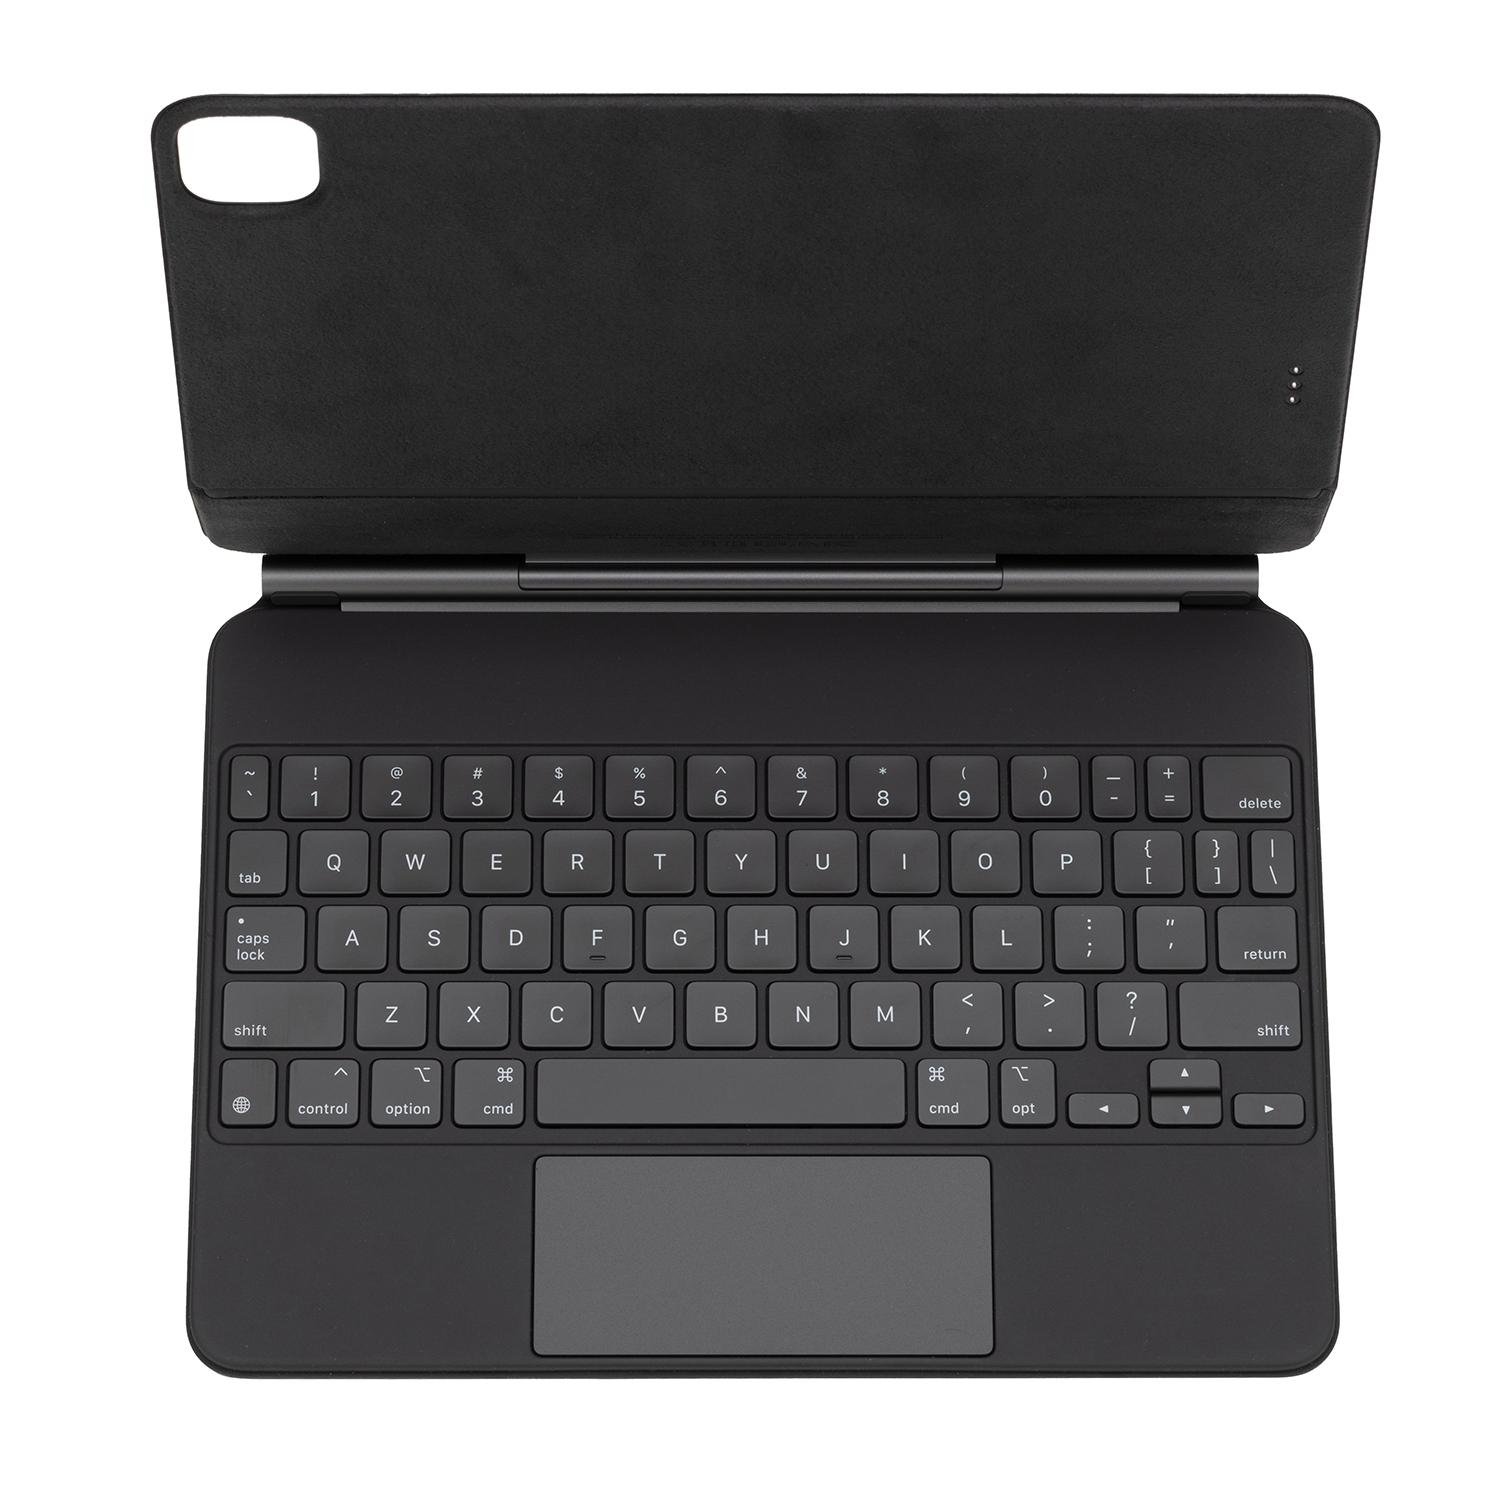 Apple MXQT2LL/A Magic Keyboard with Trackpad at MacSales.com